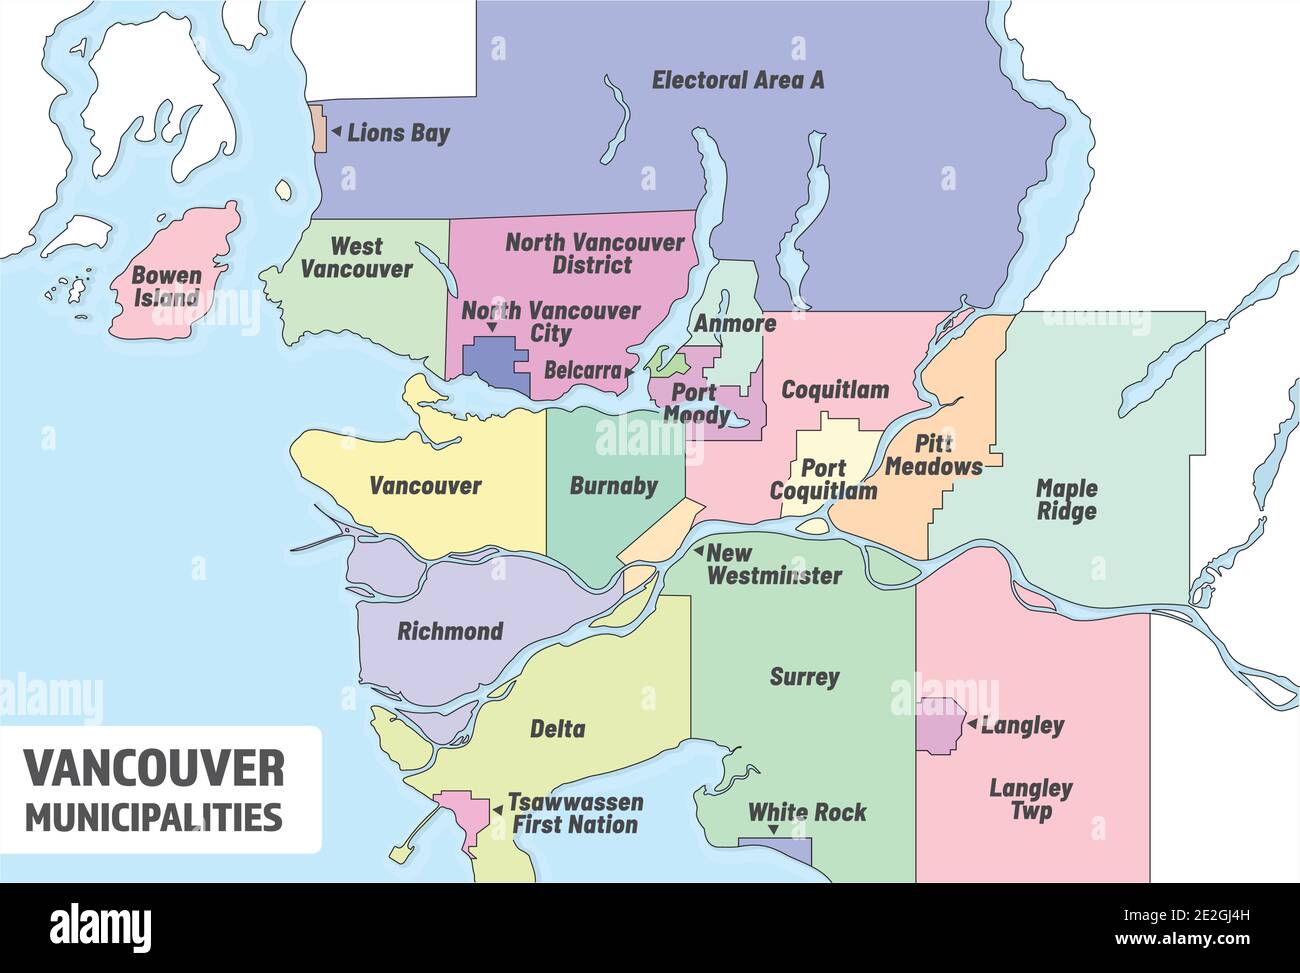 Mappa dei comuni di Vancouver. Mappa amministrativa della metropolitana Vancouver con tutte le città e regioni pianificazione e la consegna Gouvernement regionale. Illustrazione Vettoriale